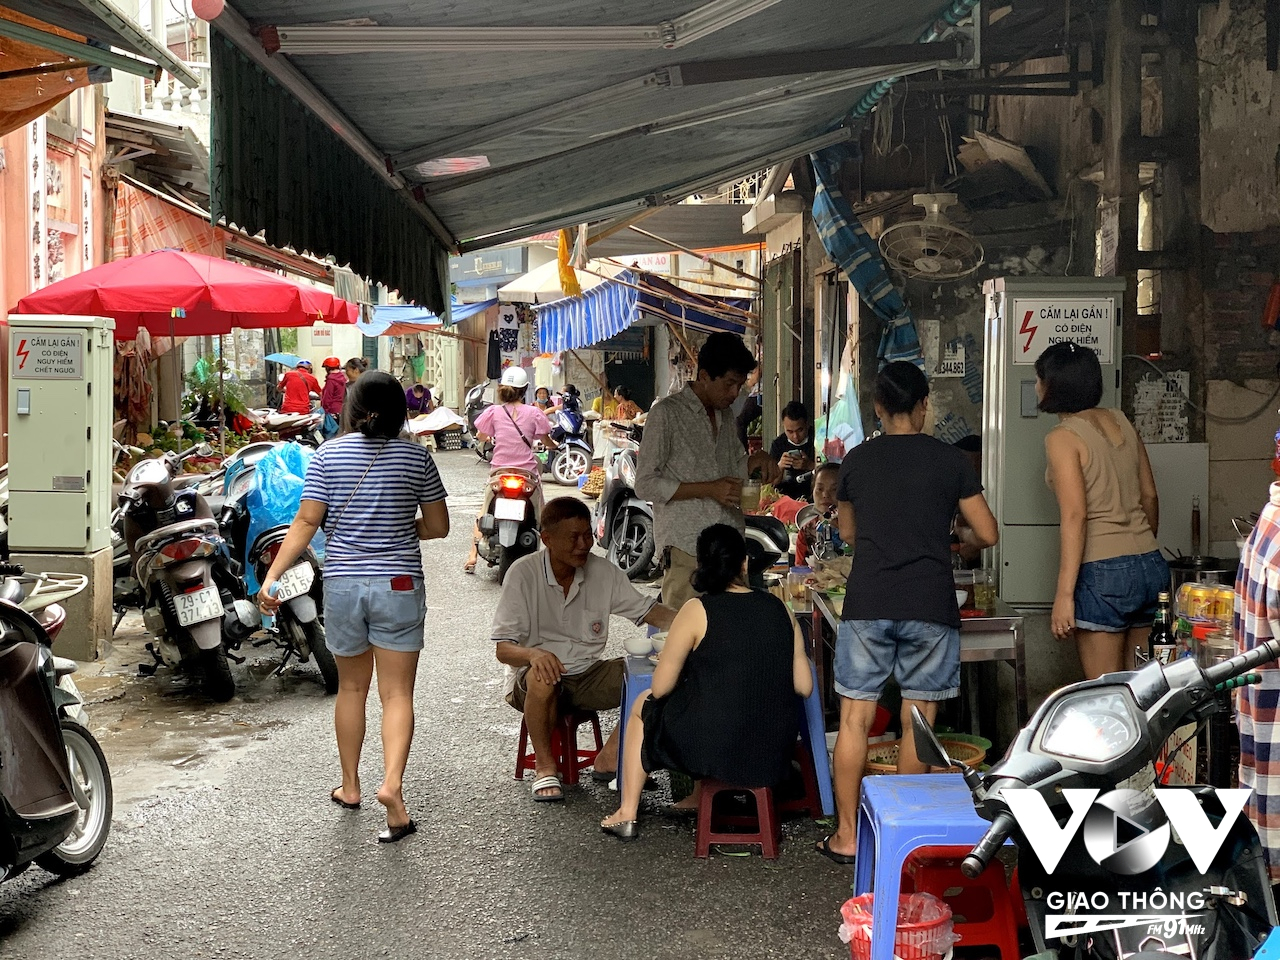 Tuy nhiên, để hiểu về văn hoá ẩm thực của người Hà Nội, người ta sẽ phải tìm đến những con ngõ nhỏ lắt léo trong phố cổ, nơi phục vụ những món ăn bình dân, hợp túi tiền với nhiều người, và đặc biệt rất ngon và mang đậm nét văn hoá ẩm thực của người Hà Nội